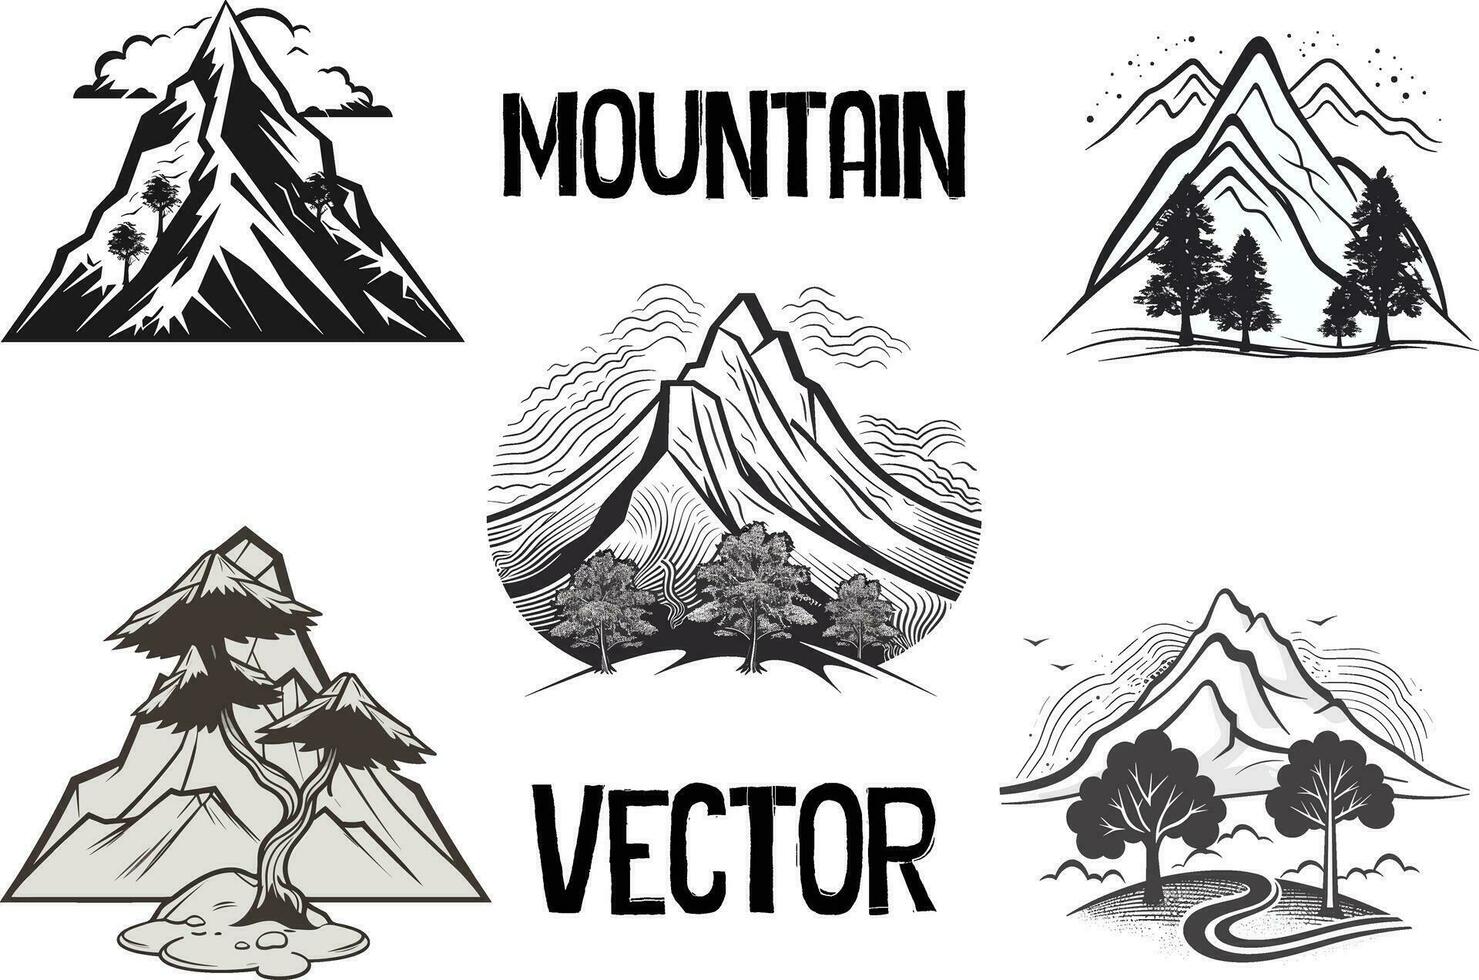 Mountain vector artwork, mountain logo, mountain clipart